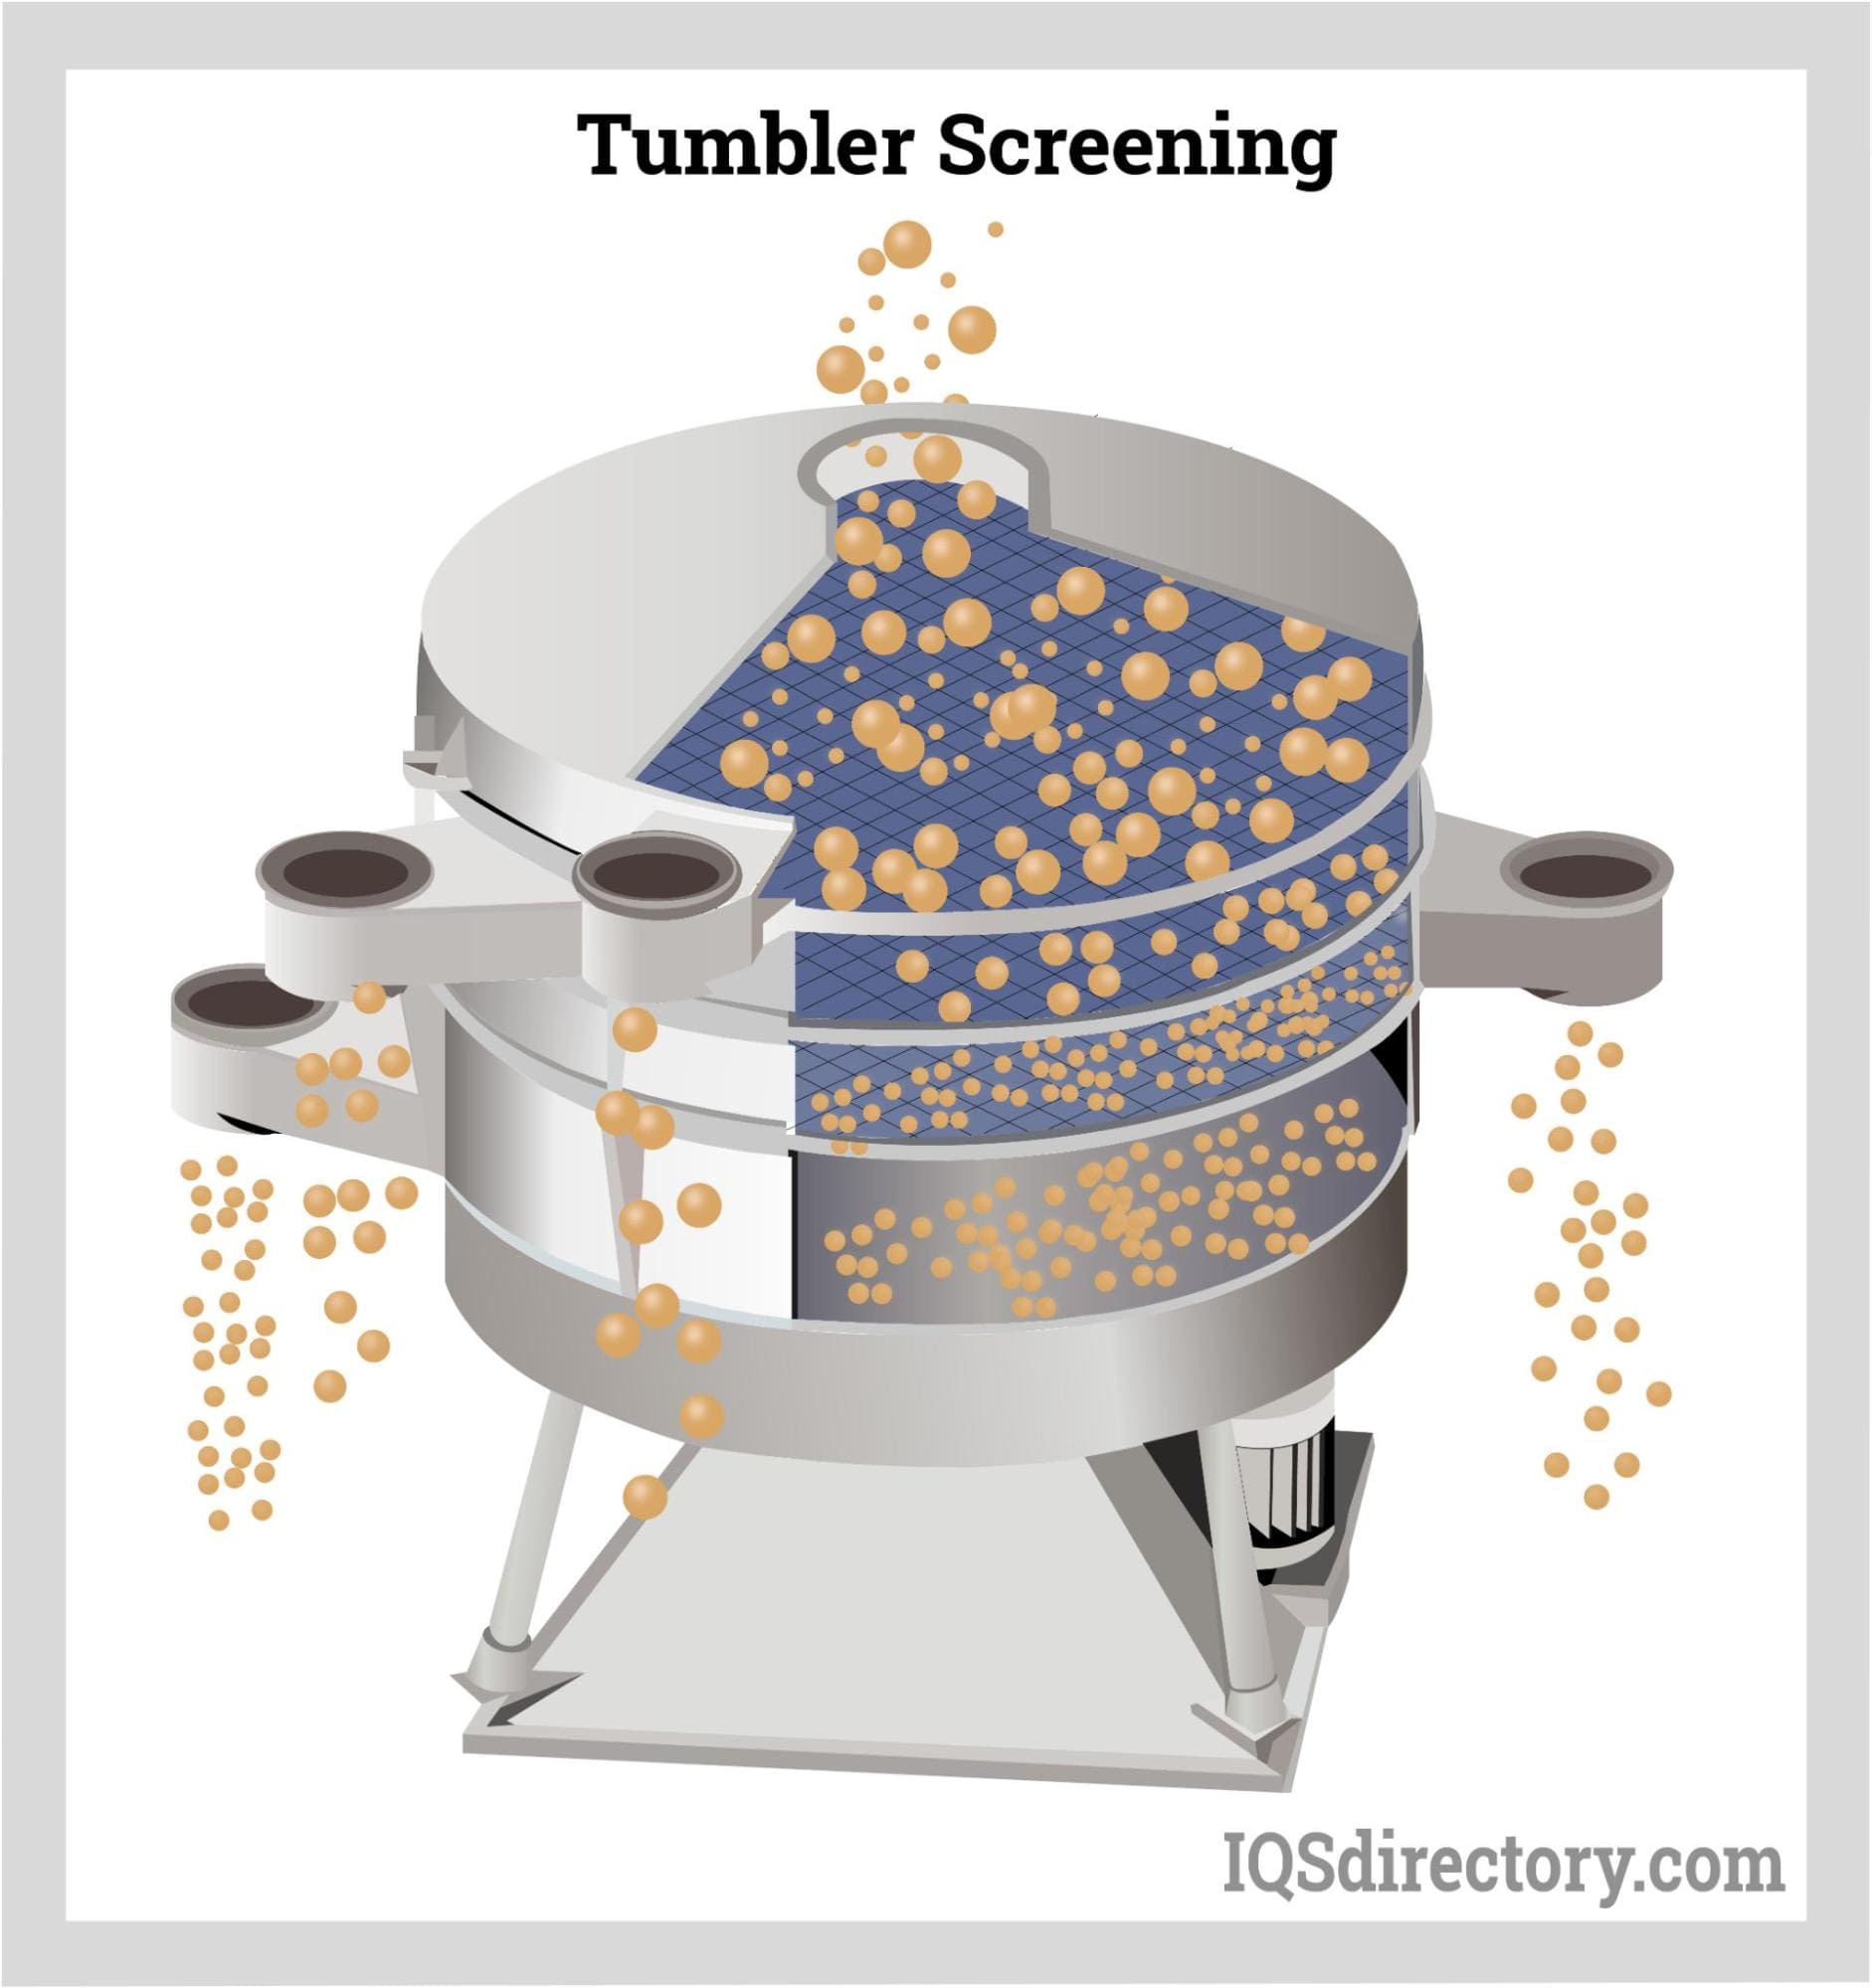 Tumbler Screening